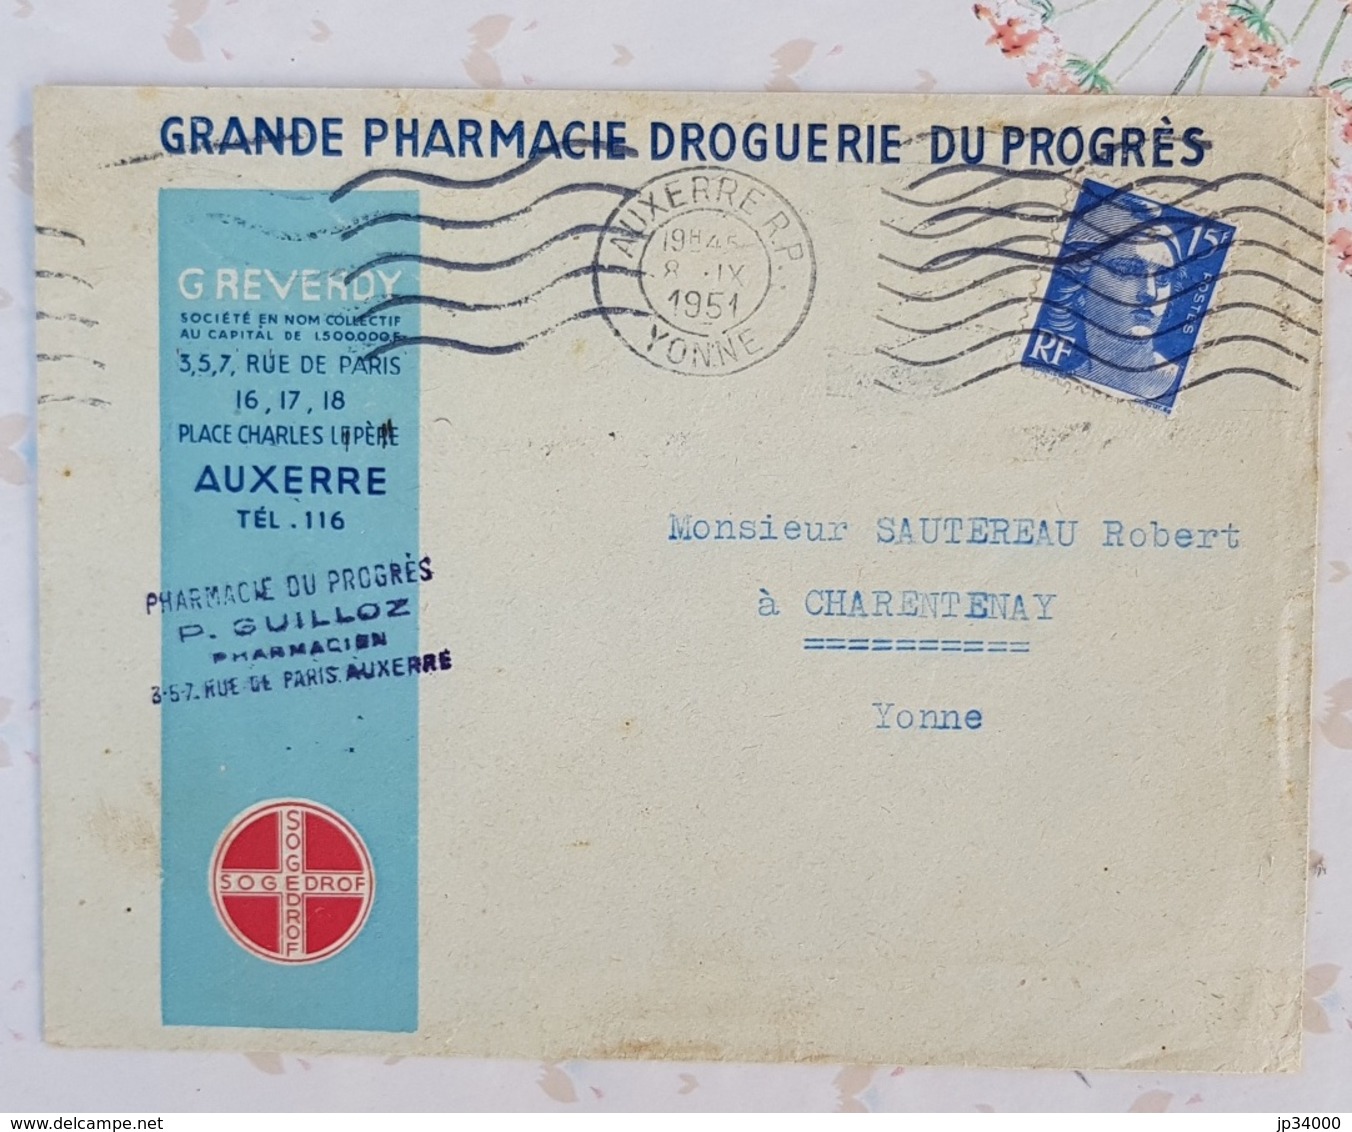 FRANCE Phamarcie, Medecine, Lettre A Entete Publicitaire GRANDE PHARMACIE DU PROGRES à AUXERRE 1951 - Pharmazie